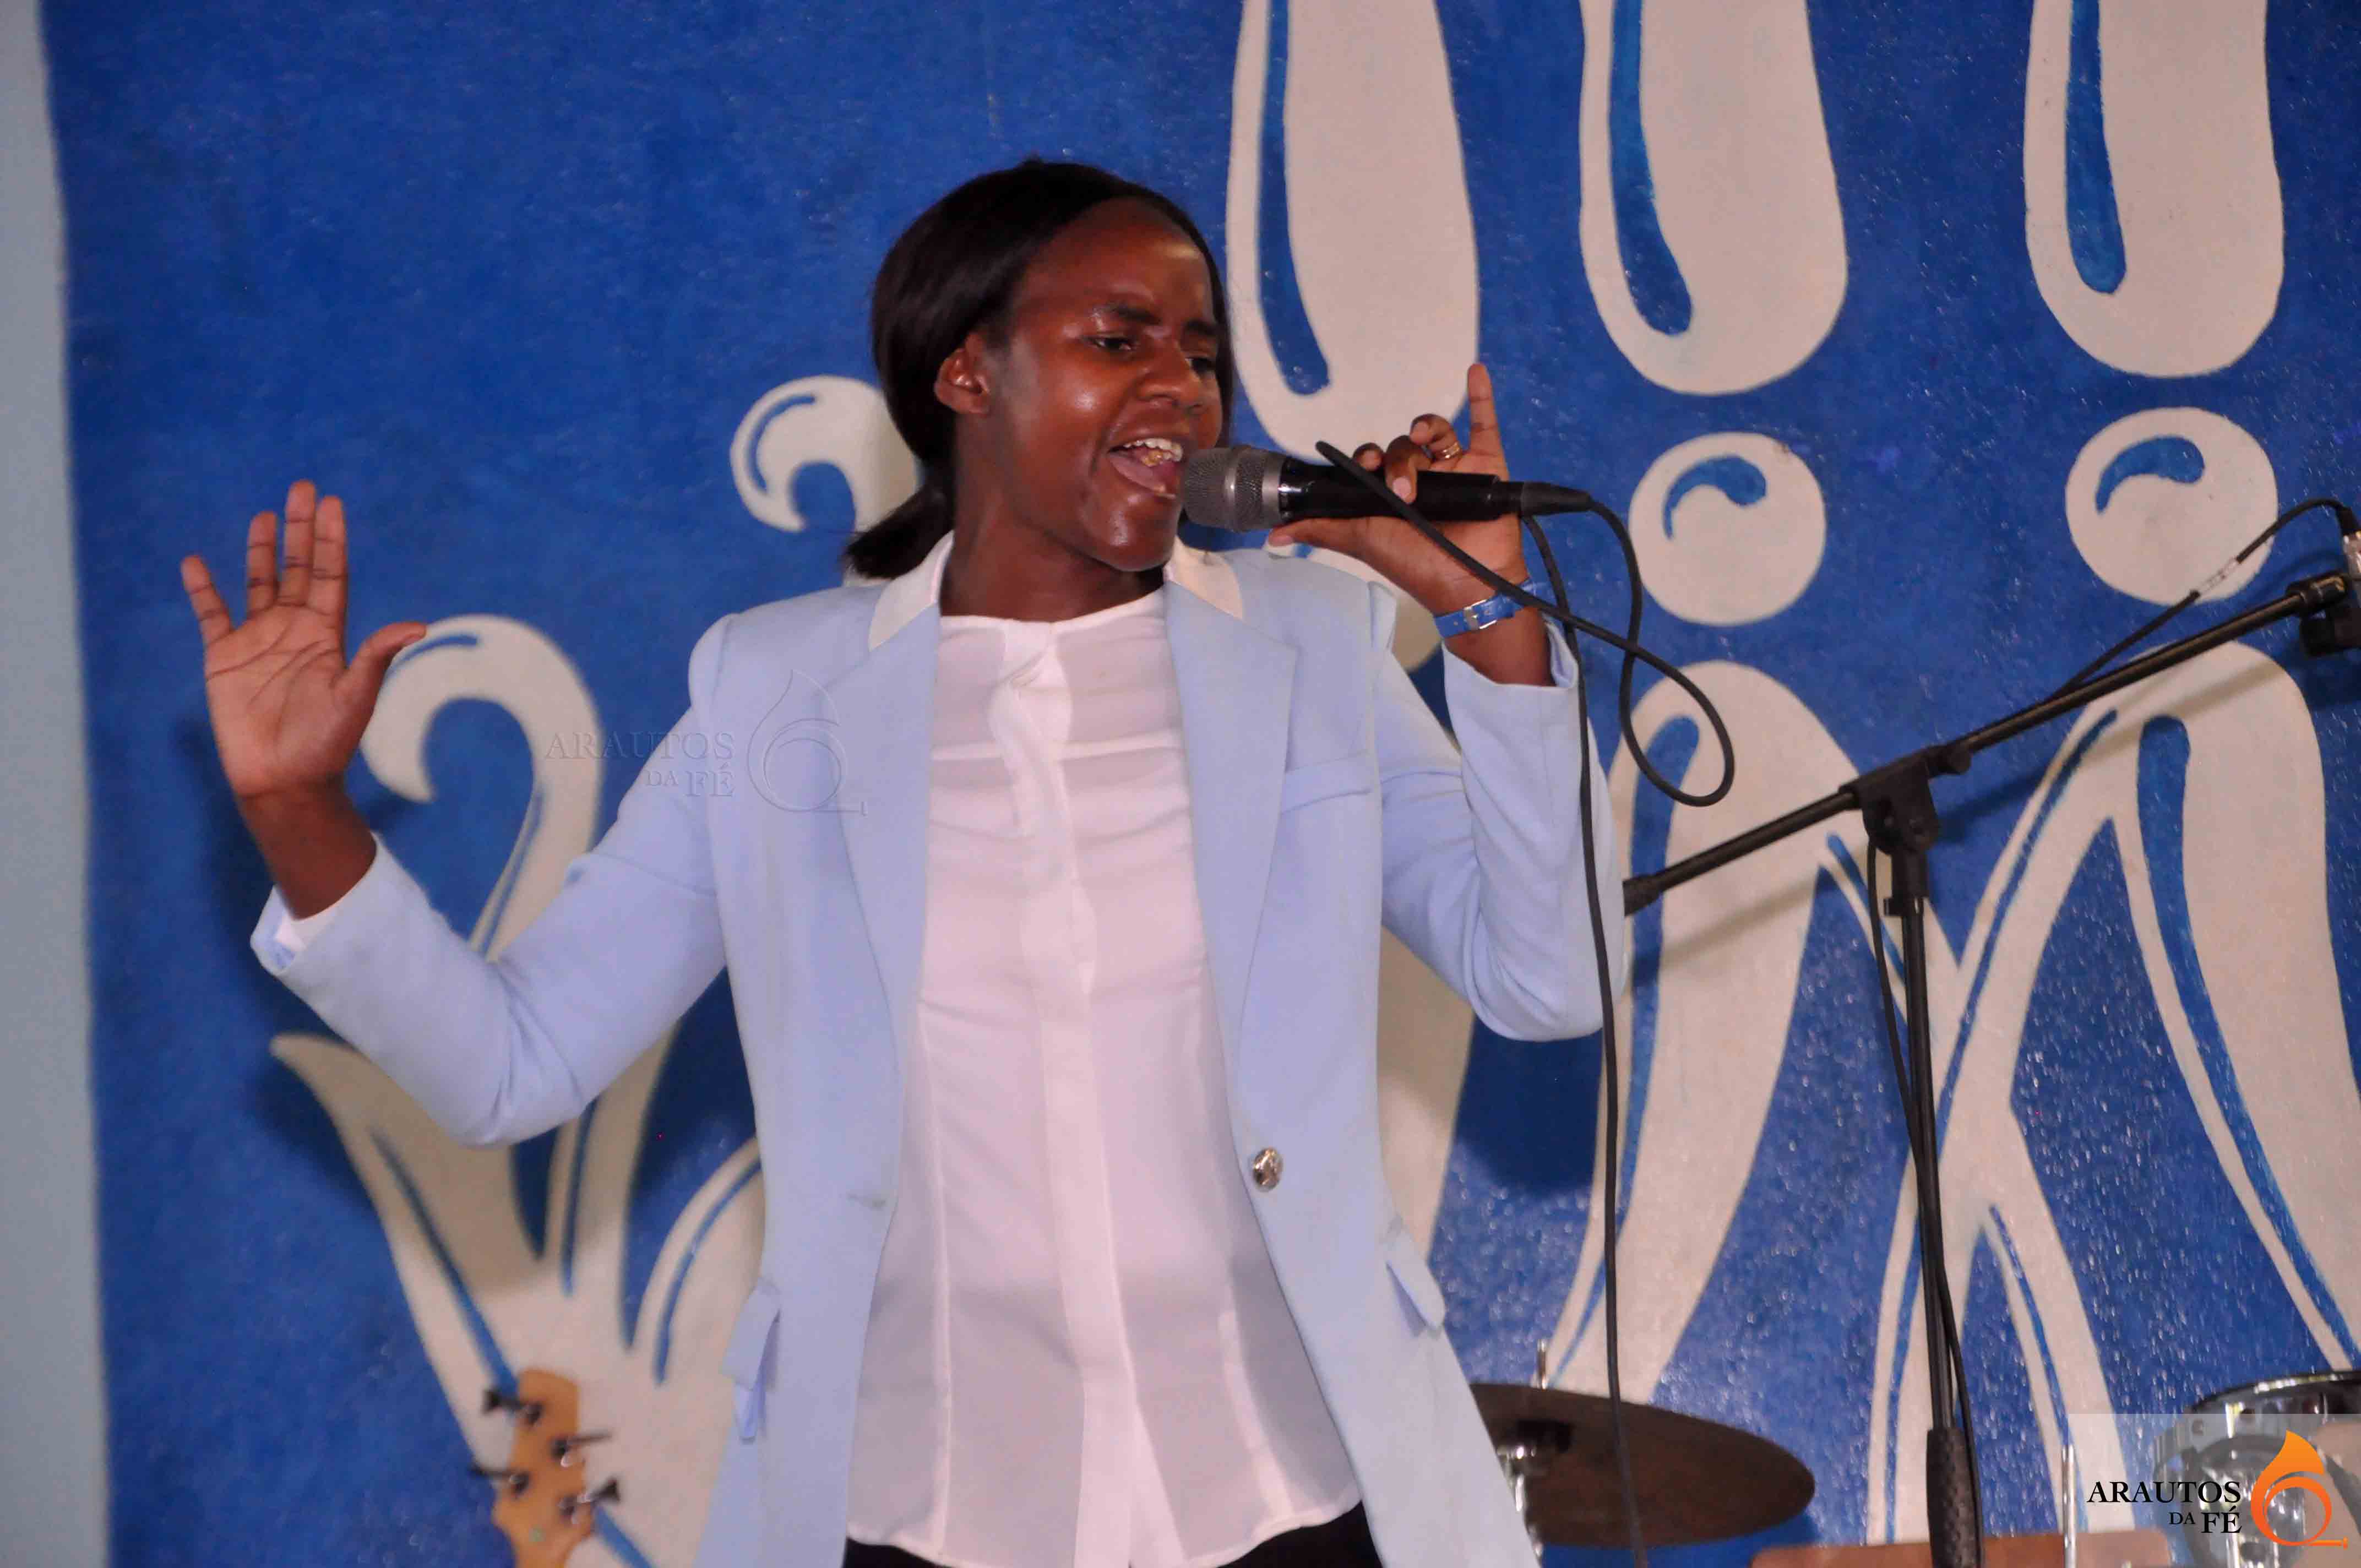 Irmã Cubana foi uma das cantaras convidadas ao evento